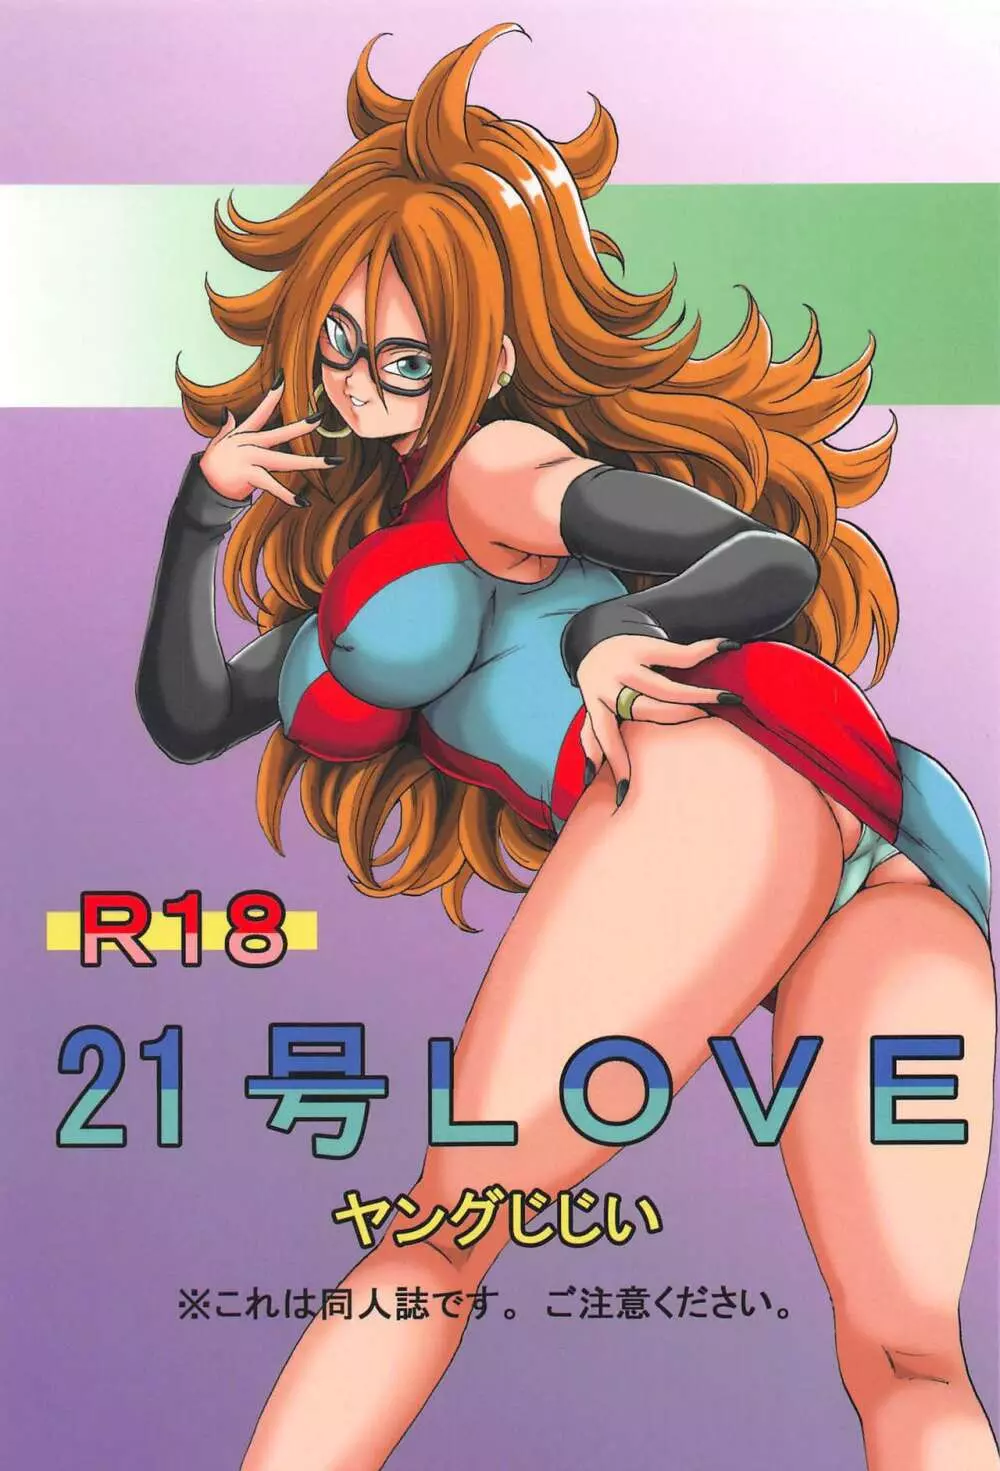 21号LOVE